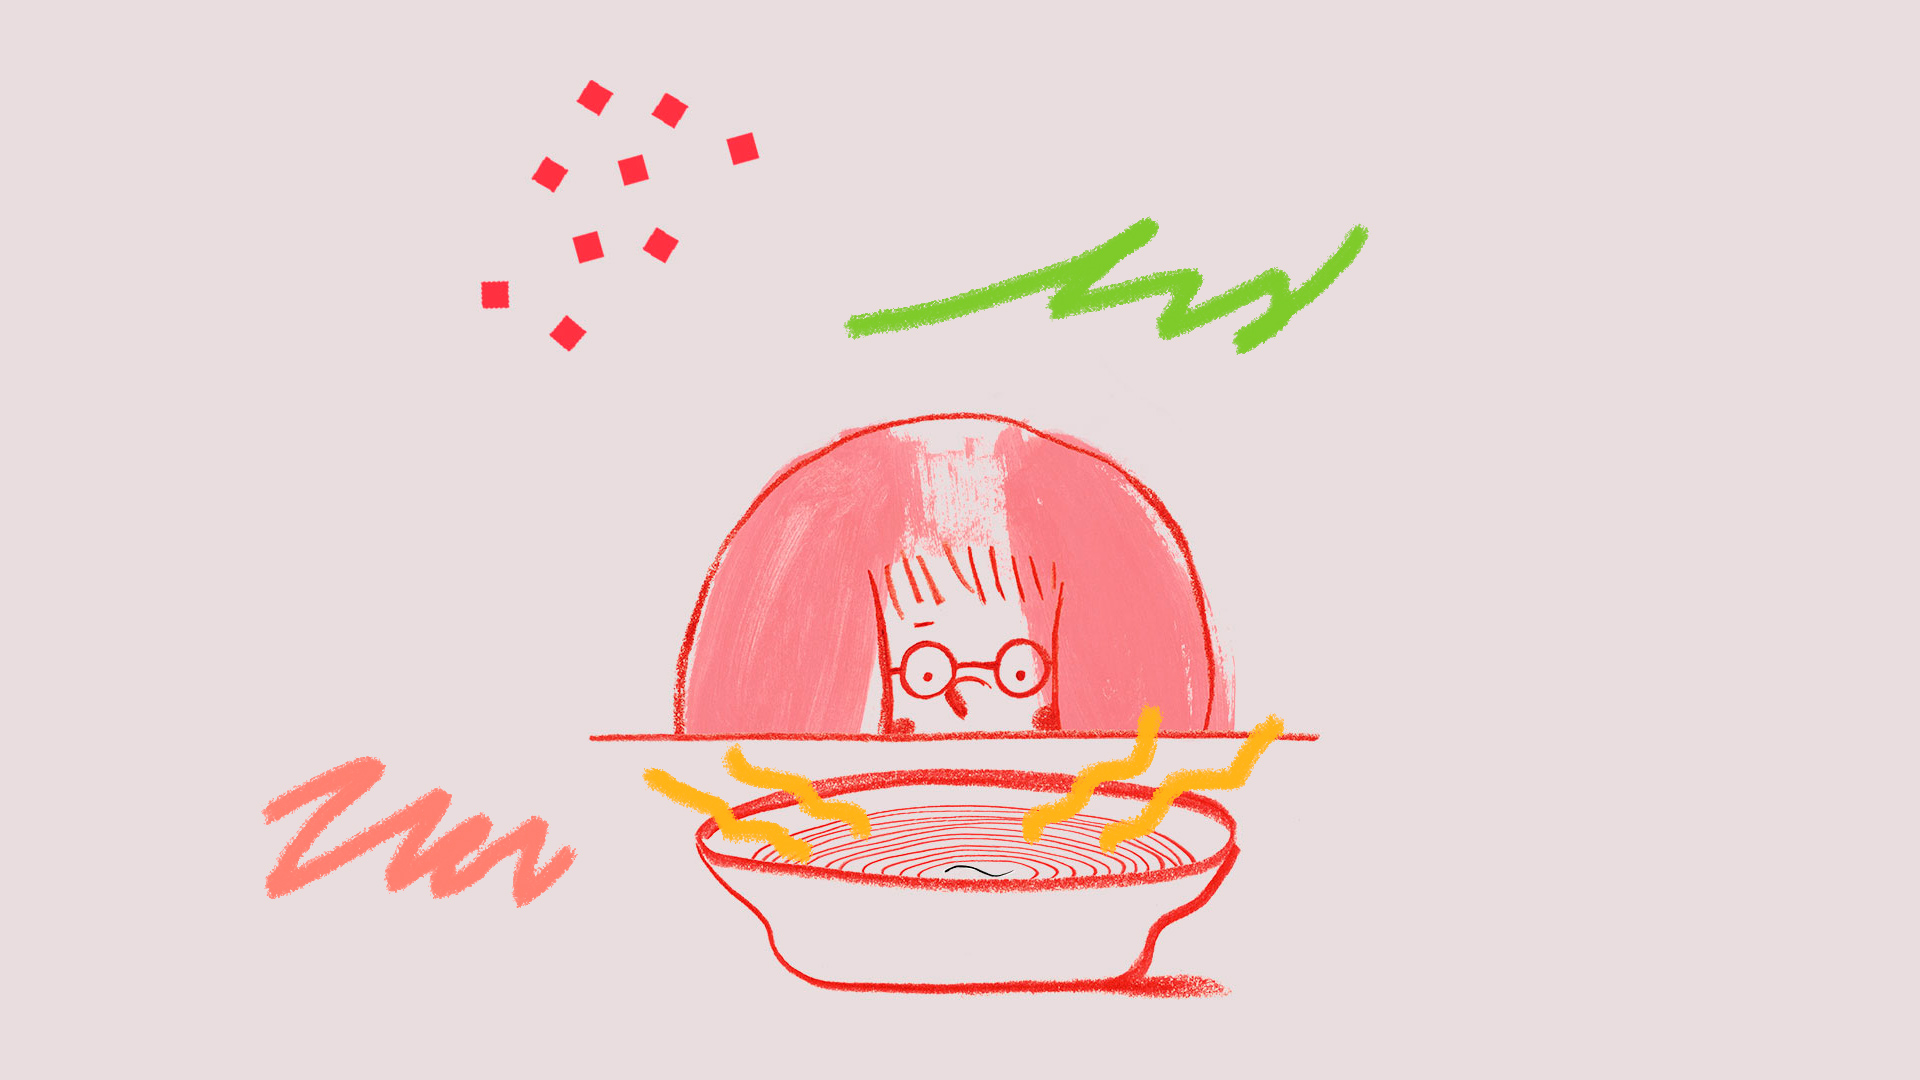 O personagem principal do livro Um pelo na sopa está sentado em frente a um prato de sopa de legumes. A ilustração é toda em tons de rosa e há algumas intervenções ao redor coloridas.